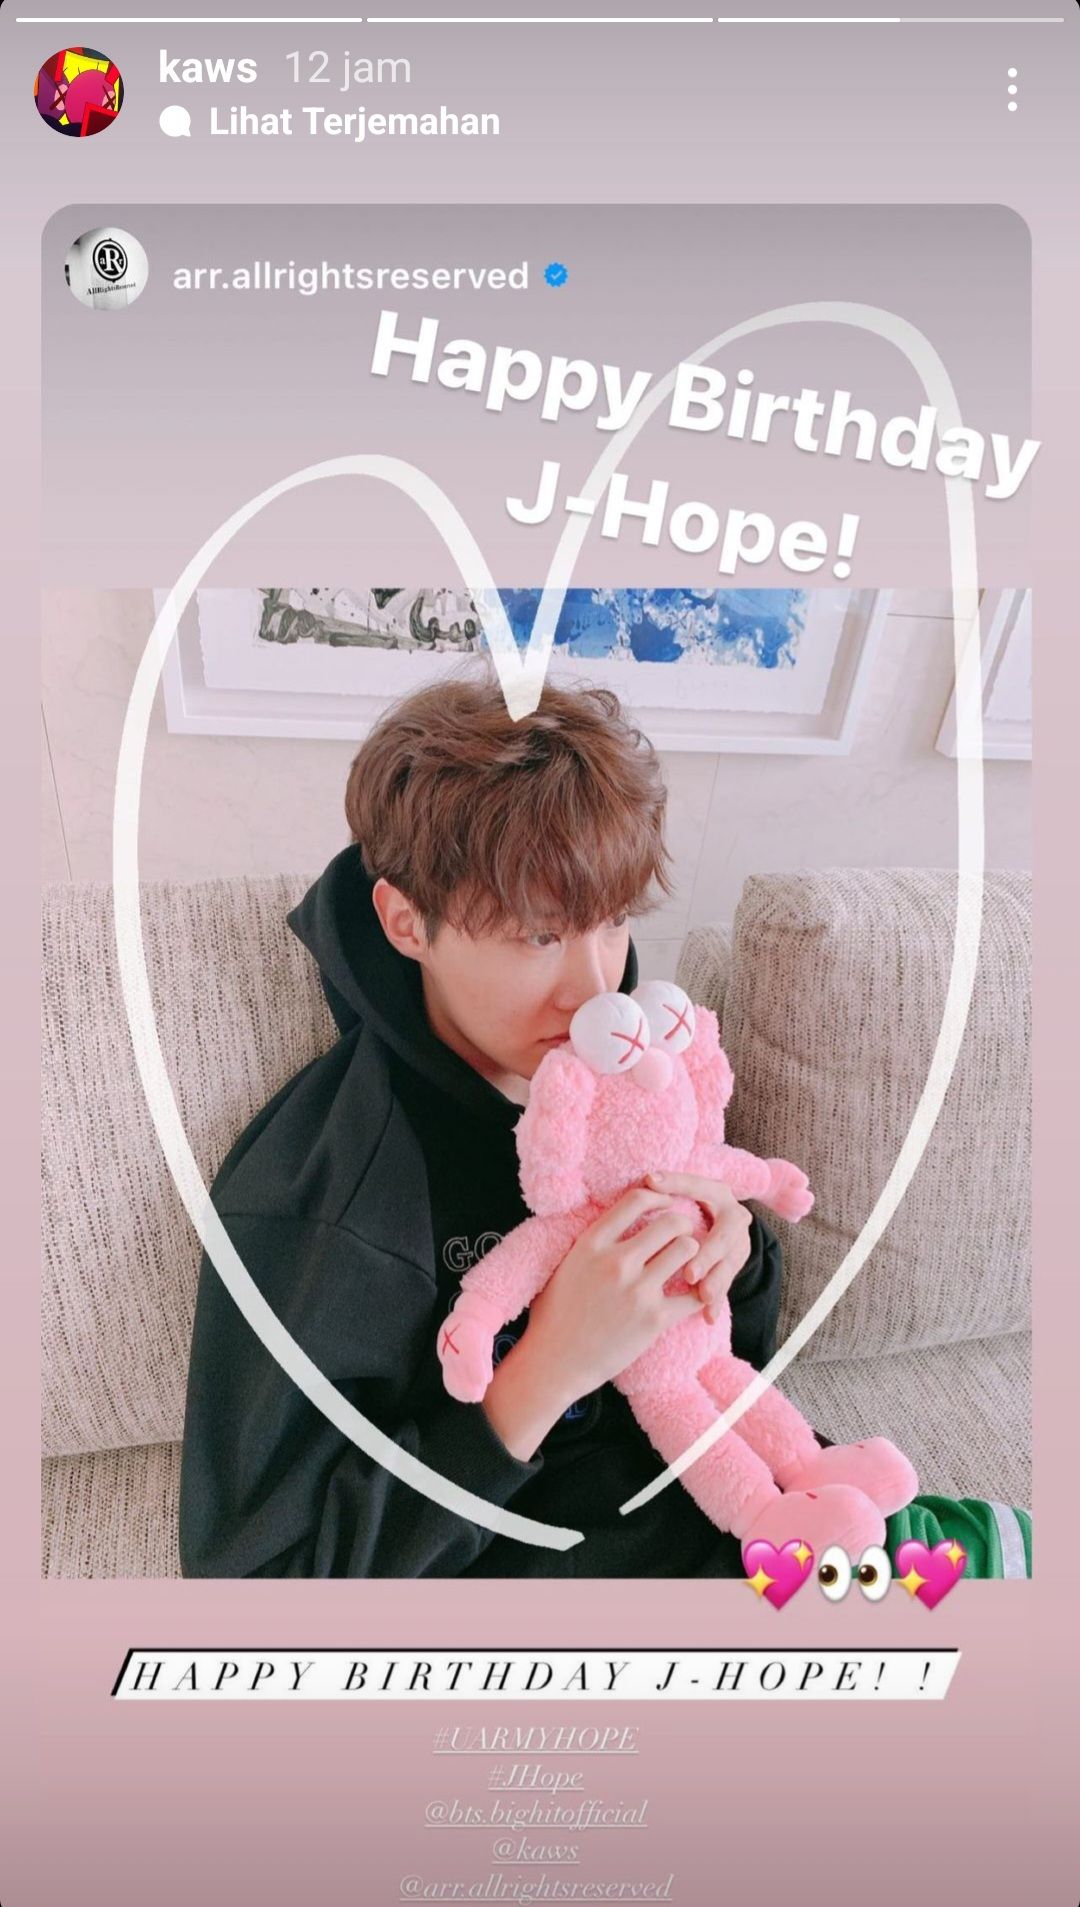 Ucapan selamat ulang tahun untuk J-Hope dari Kaws melalui Instagram Story-nya./Instagram/@kaws